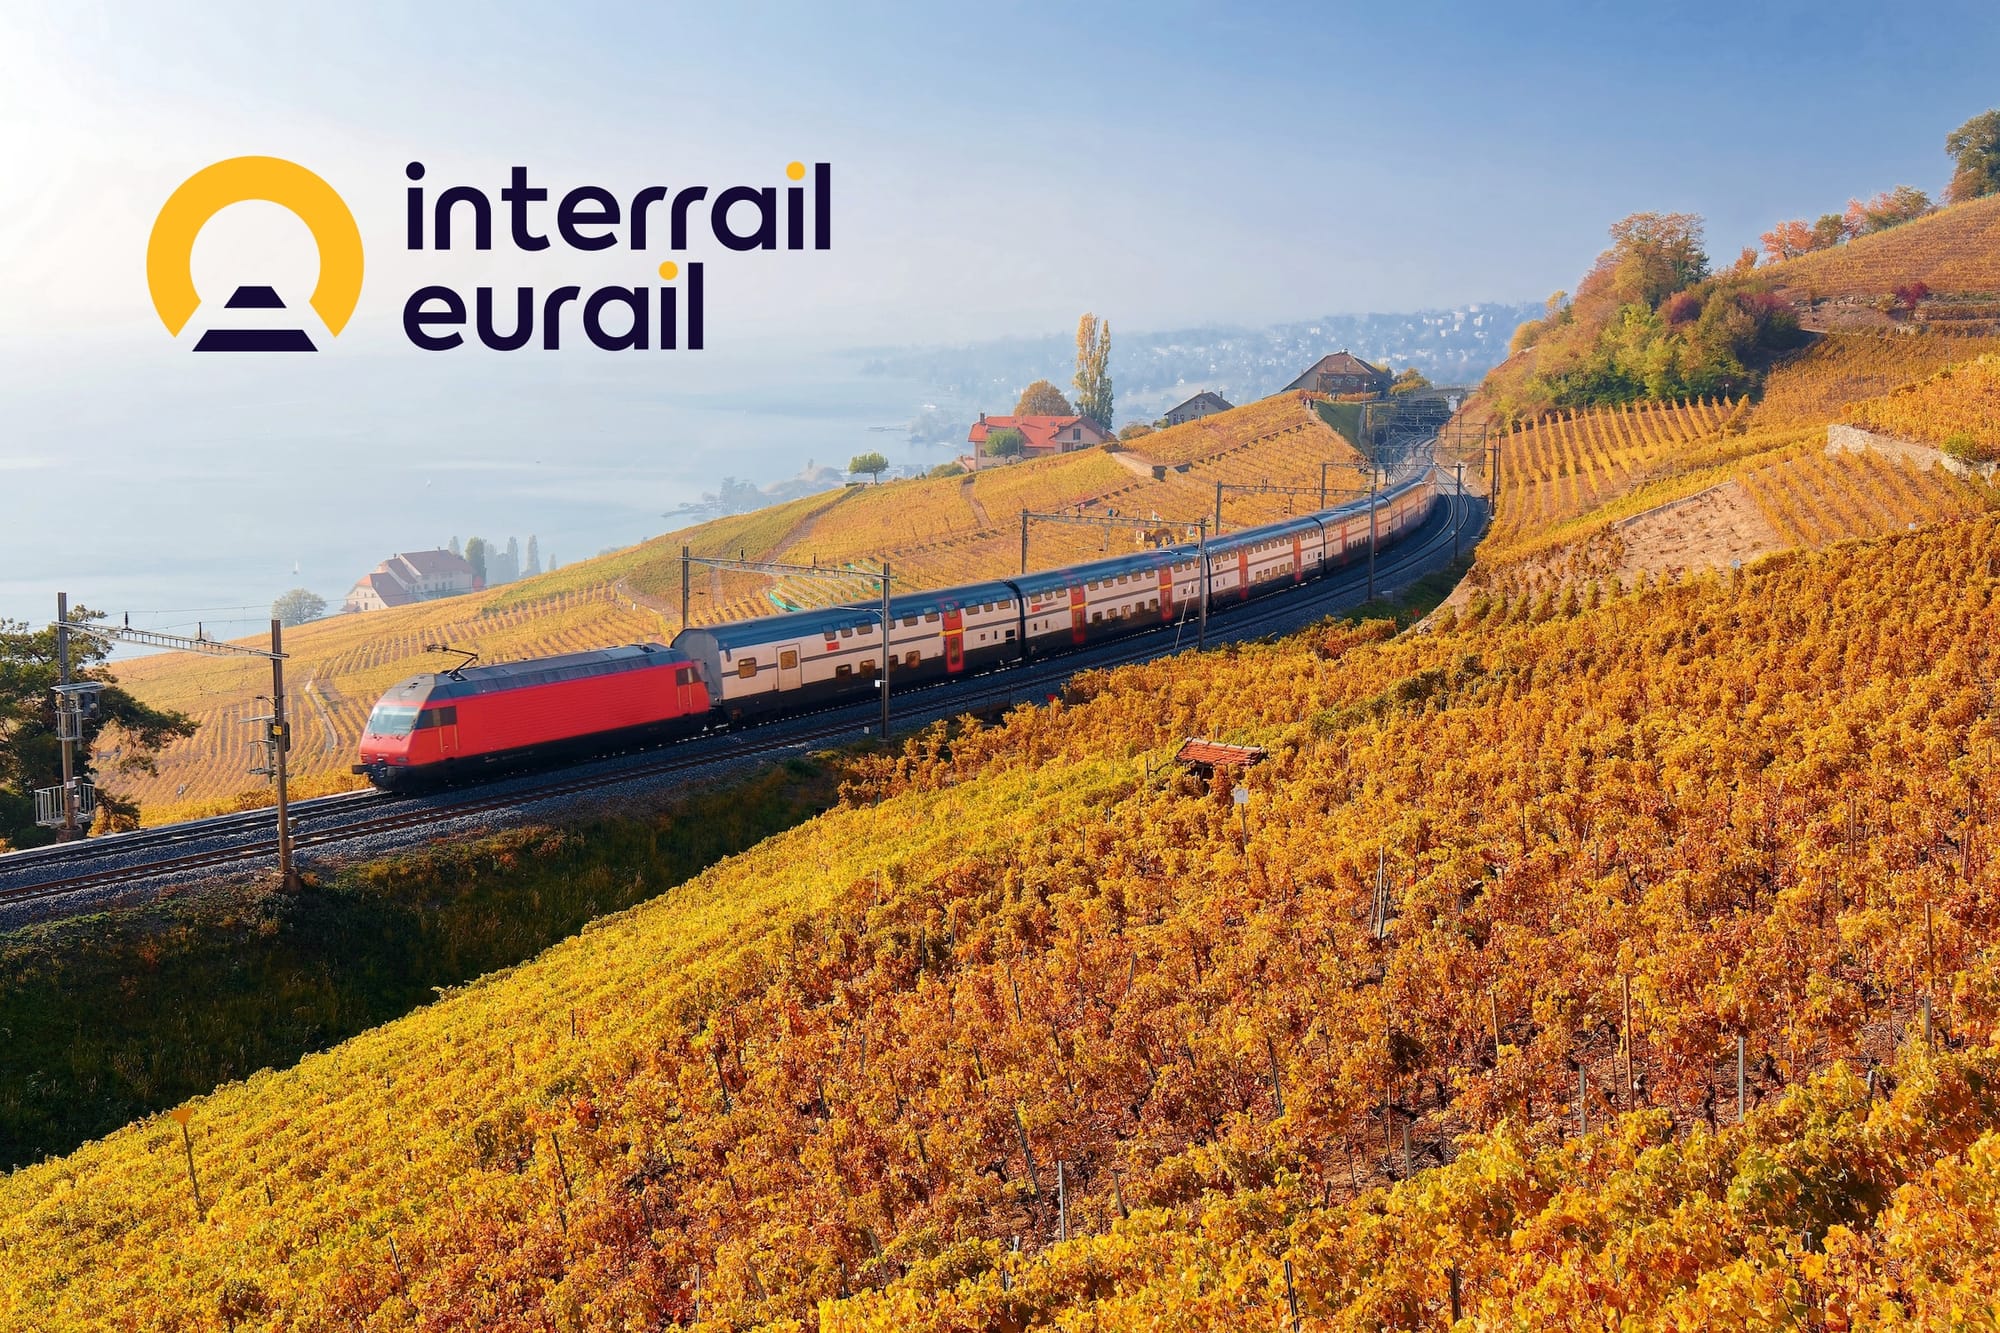 Zug in Herbstlandschaft und Interrail-Logo